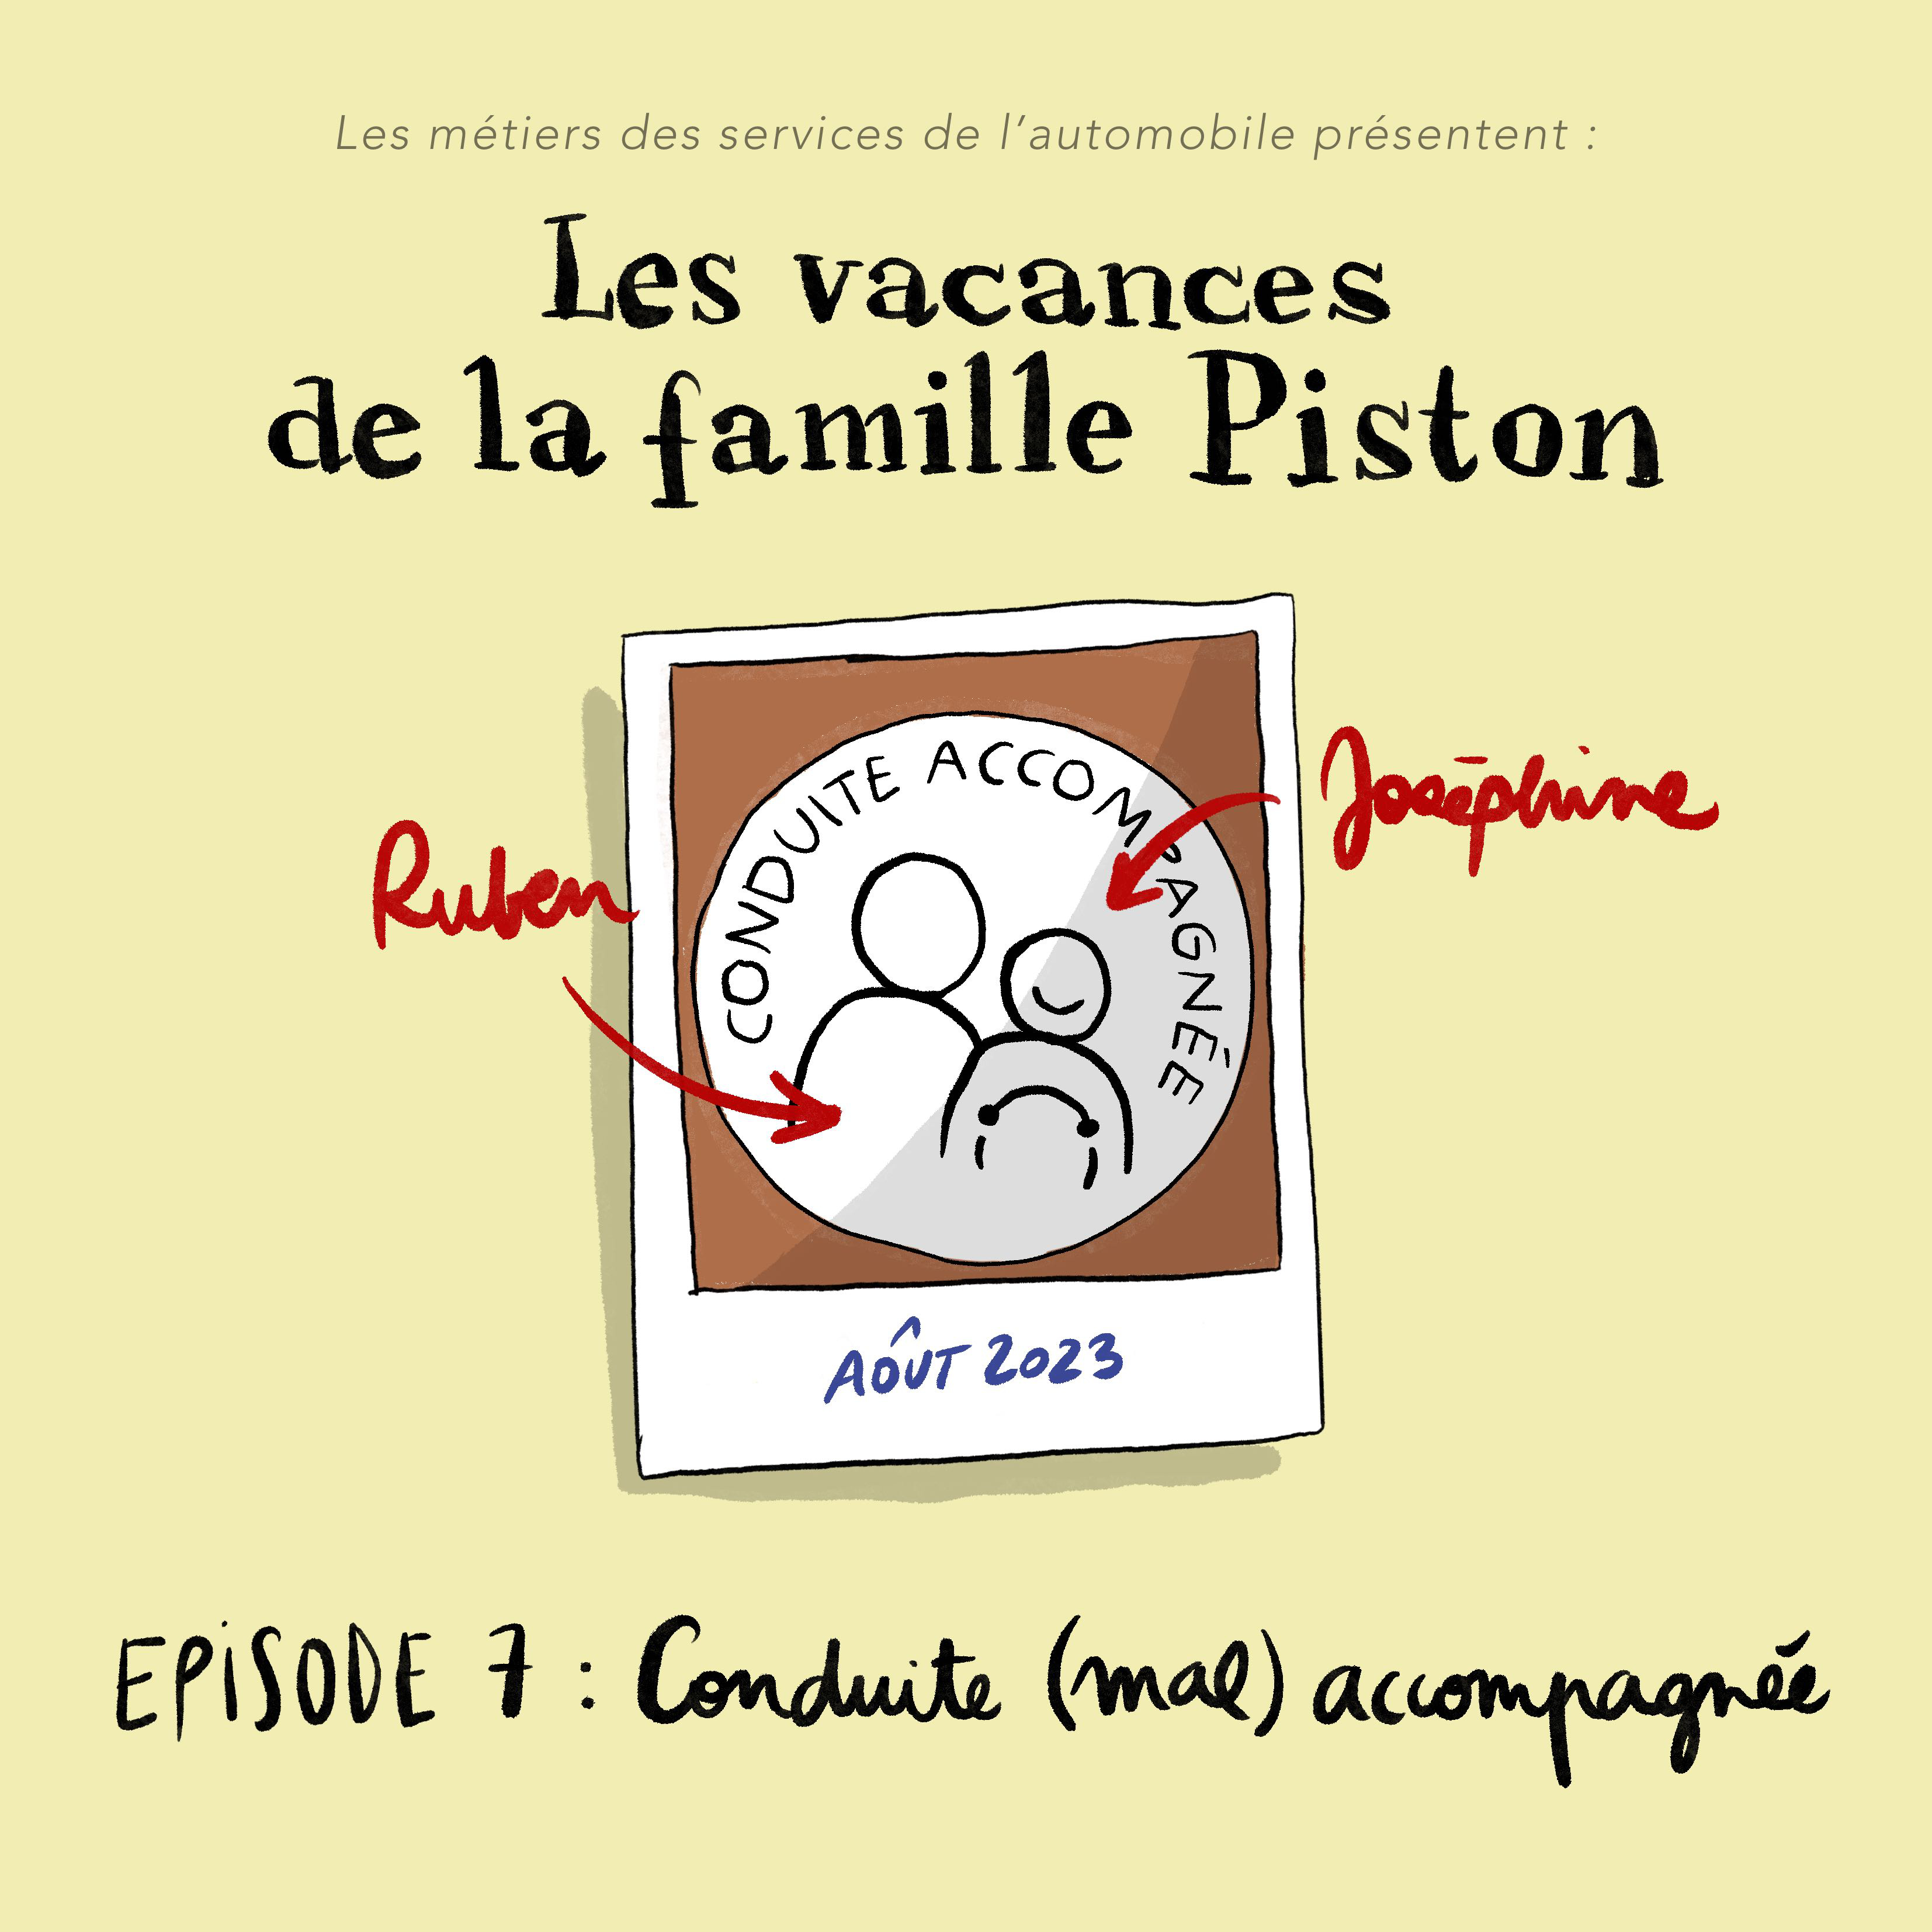 Couverture Episode 7 - Les vacances de la famille Piston